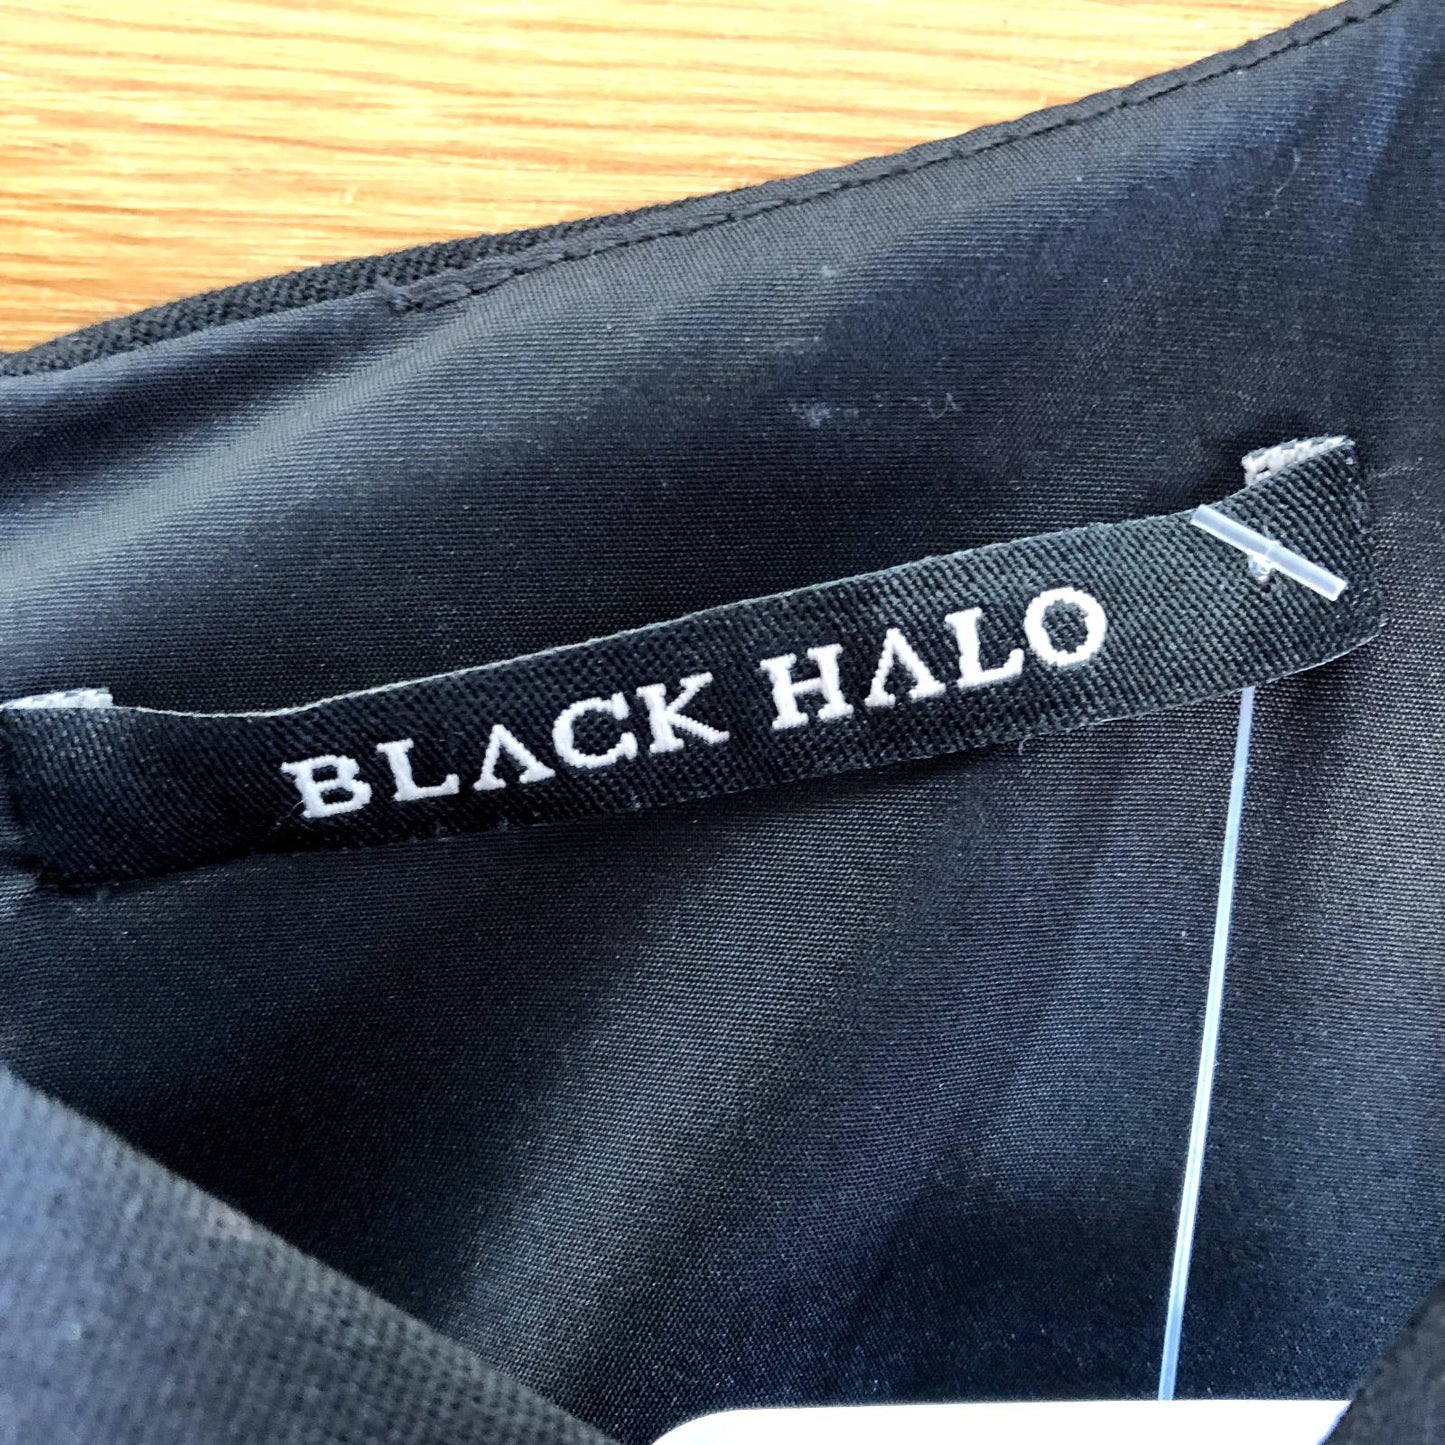 2 - Black Halo Flattering Fit Belted Jackie O Cocktail Professional Dress 0705JR